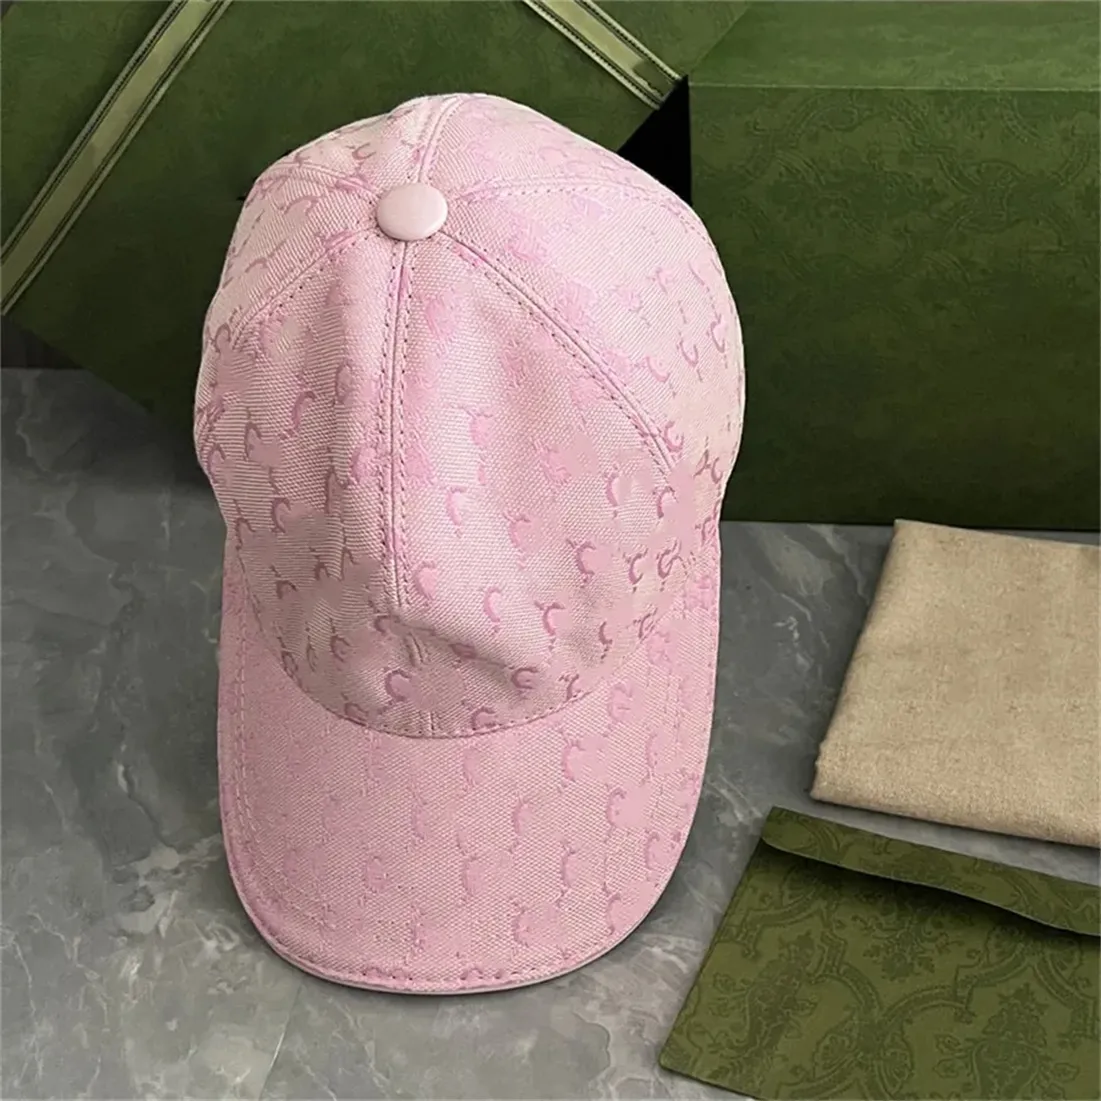 Nouveau concepteur de concepteurs classiques Caps de balle pour femmes Sports Golf CAP UNISEX Été extérieur des lettres de lettre ajusté Hip Hop Travel Sport I-7